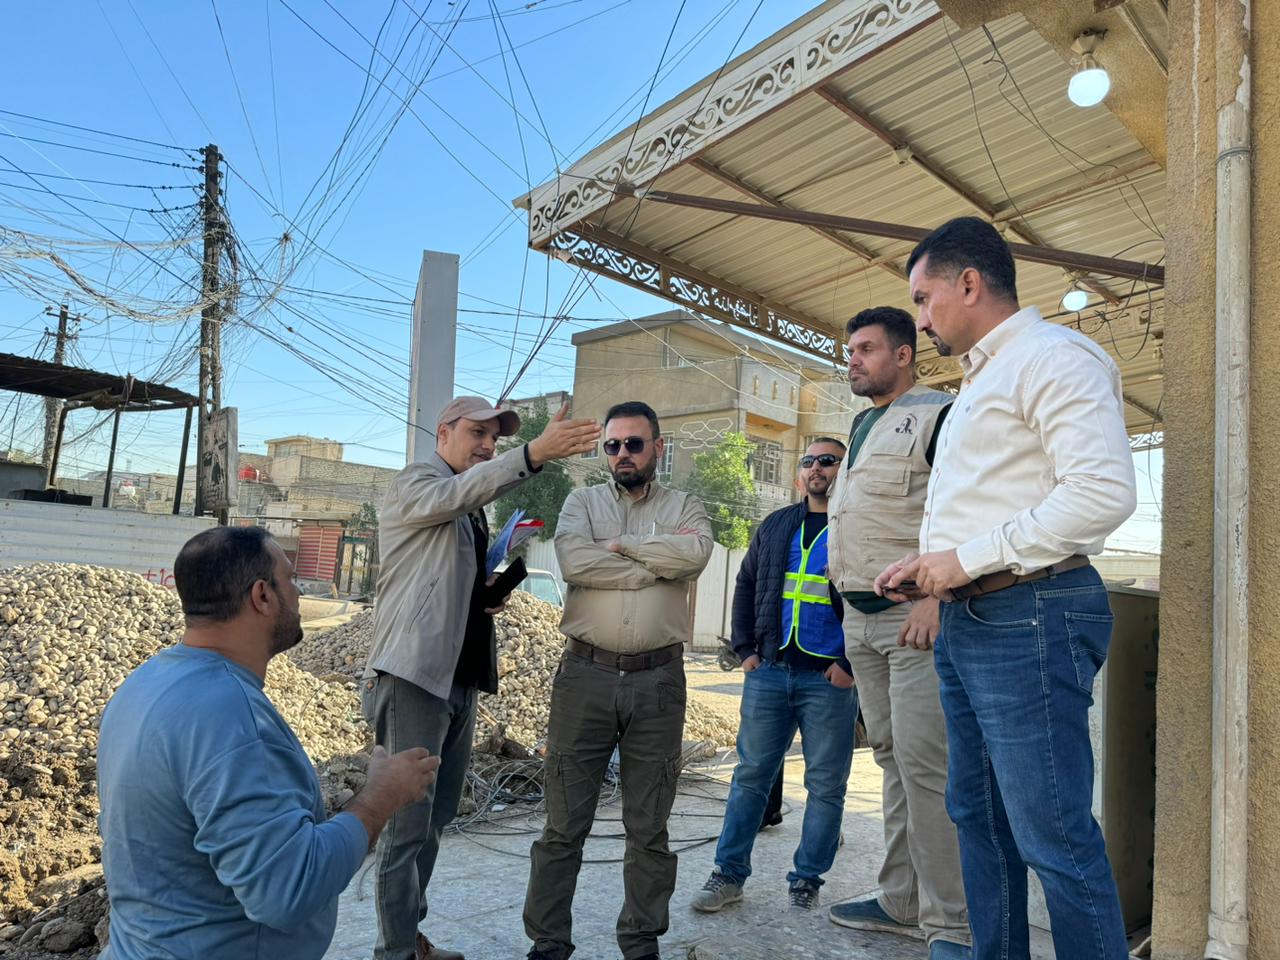 المدير العام يزور مشروع تطوير منطقة الشرطة الخامسة وشهداء السيدية في محافظة بغداد